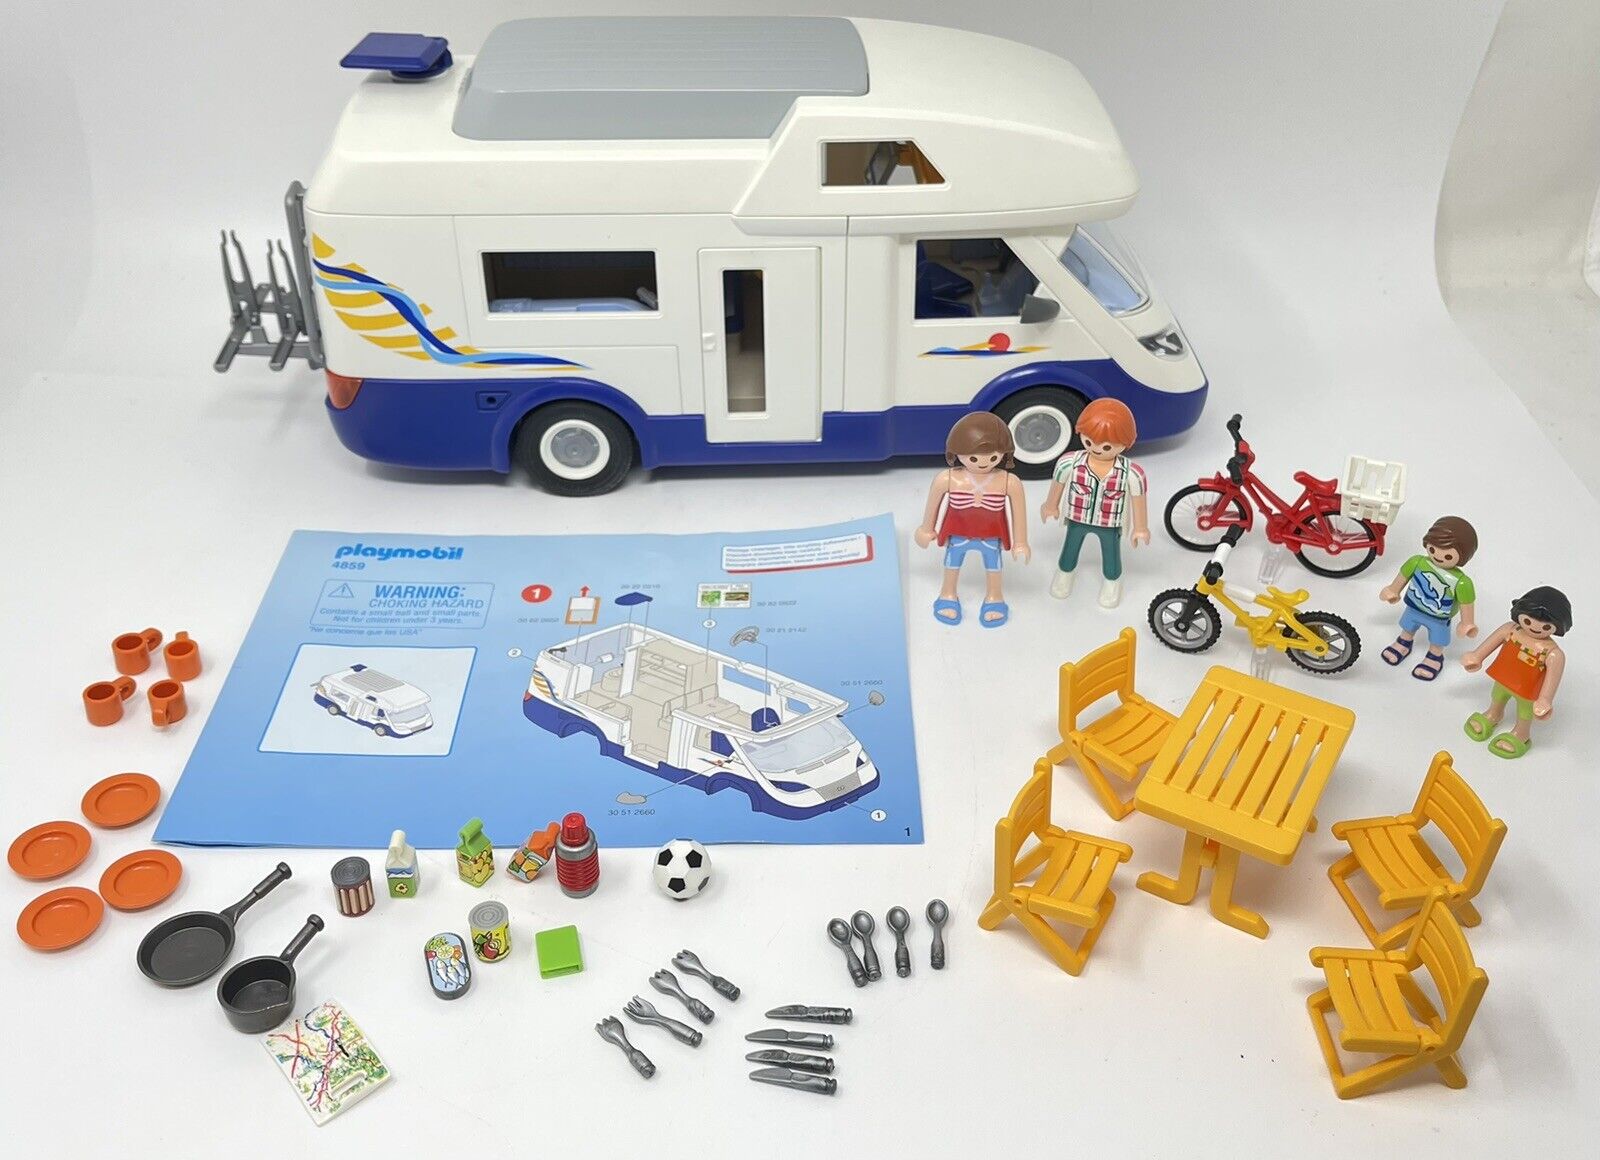 Bestået Ingen måde Biprodukt Playmobil 4859 Family Camper Van Complete with Building Instruction in Box  4008789048592 | eBay